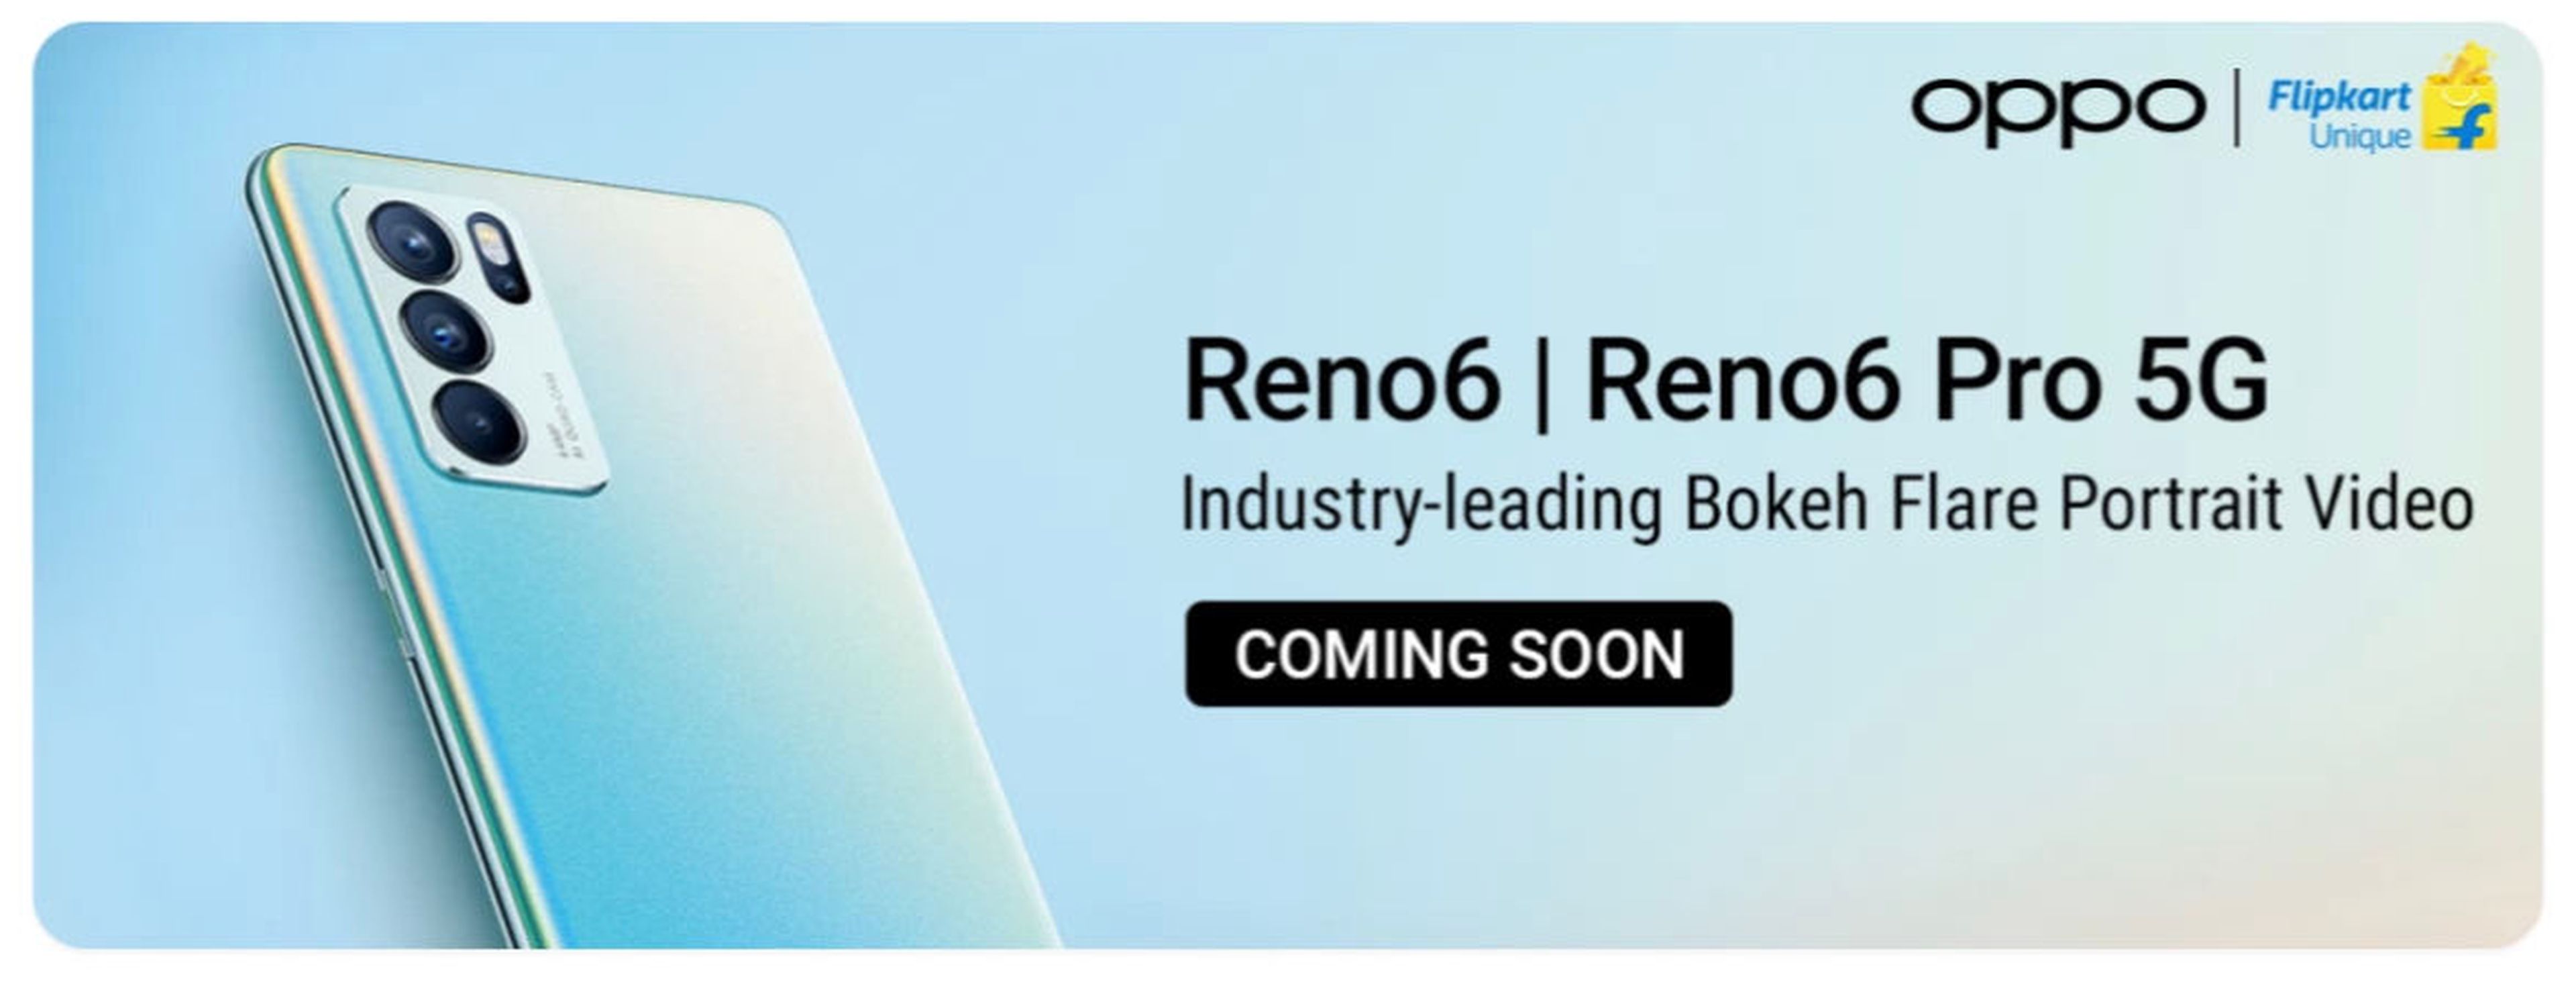 Filtradas las especificaciones del OPPO Reno 6 y Reno 6 Pro 5G